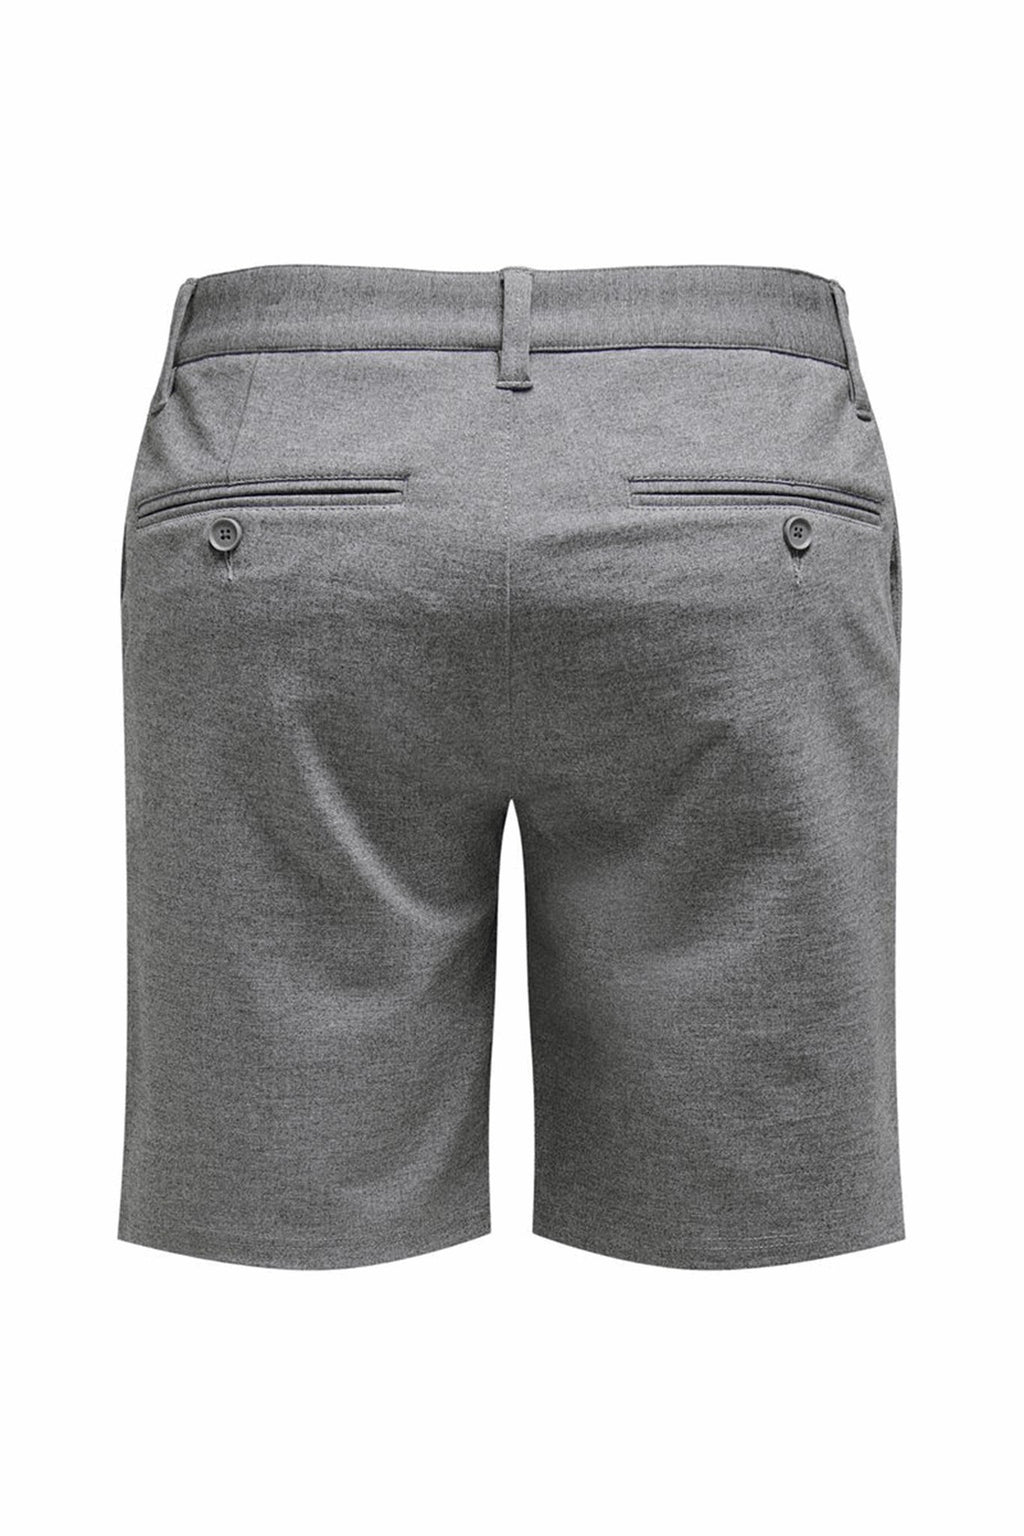 Chino Shorts - Morted Grey